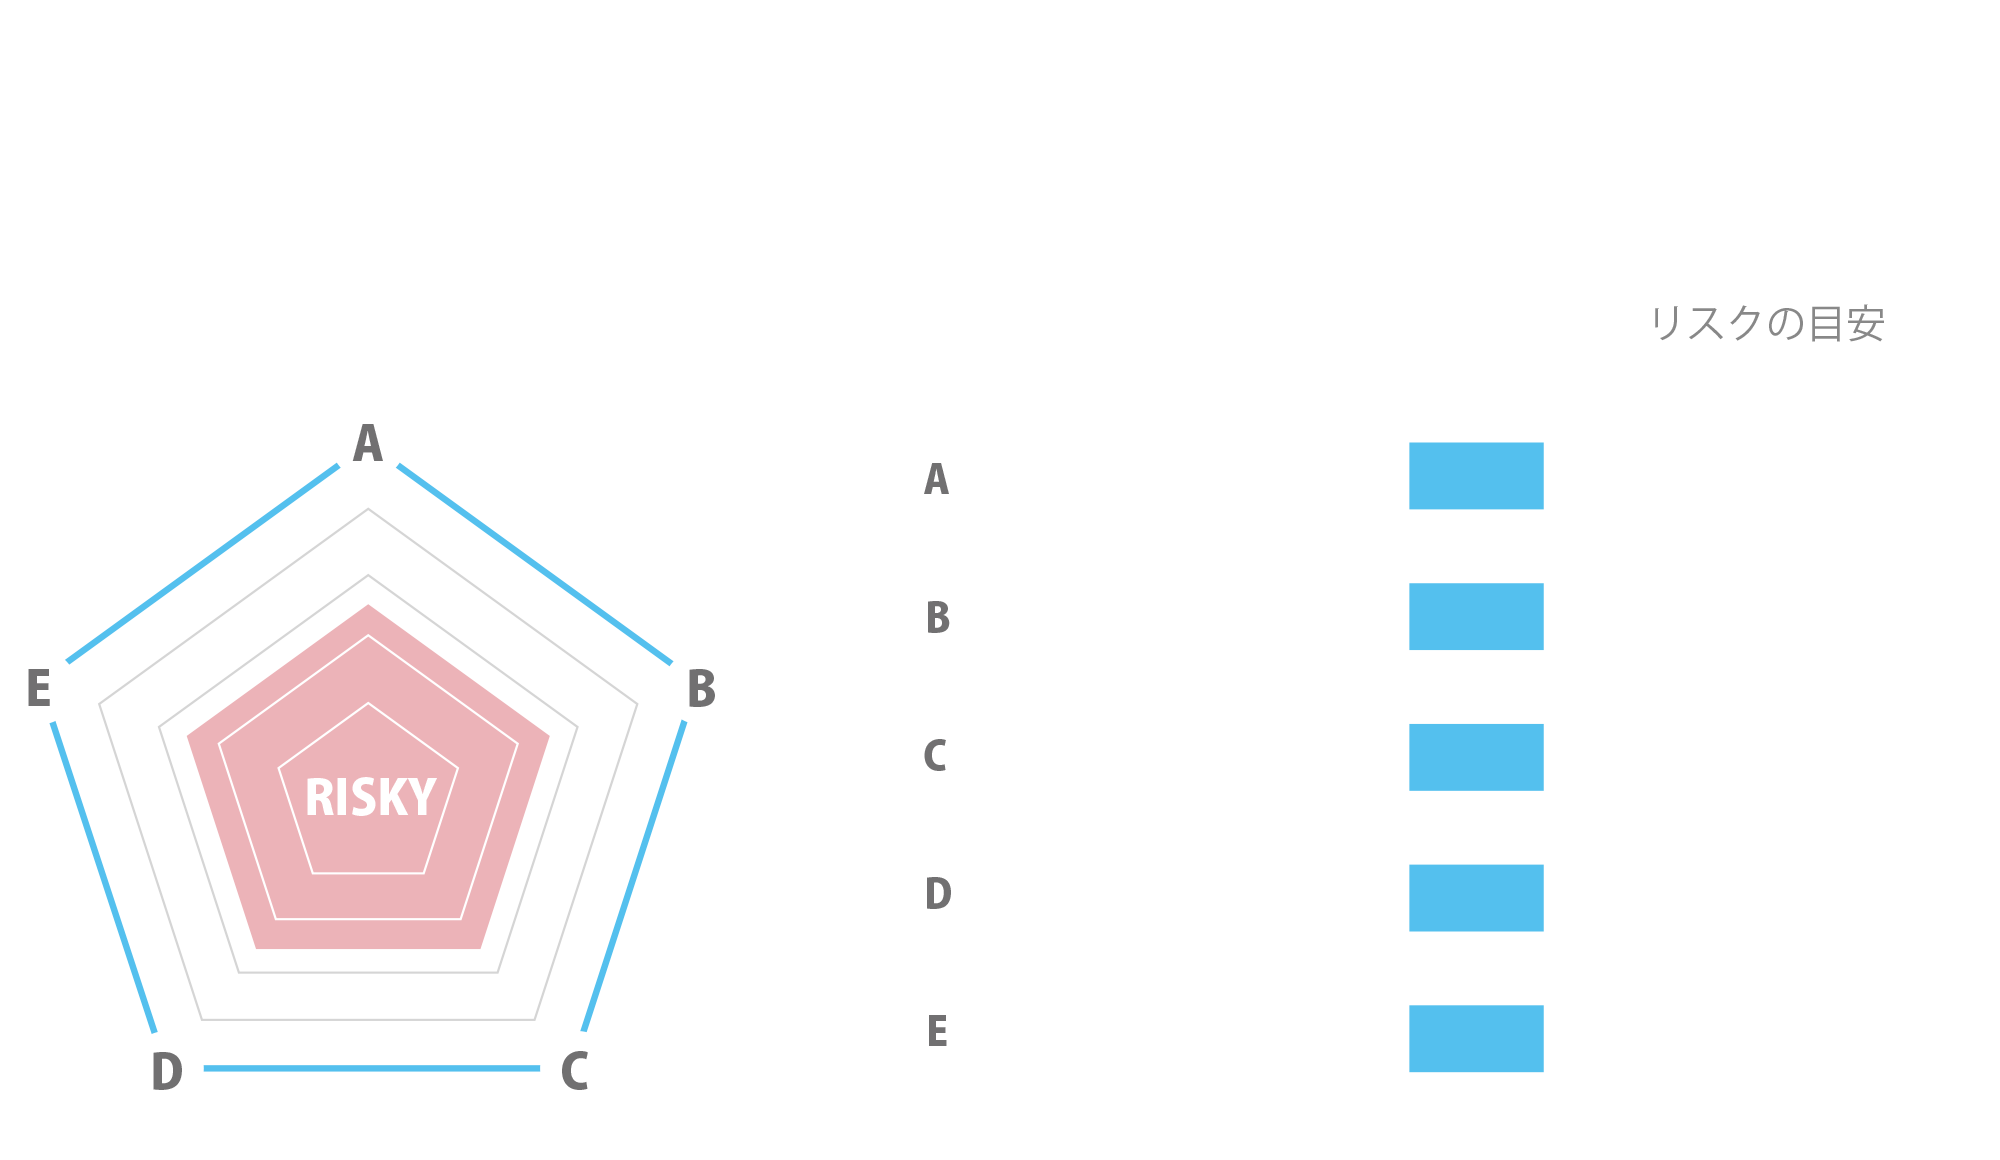 100/100 SAFETY SCORE